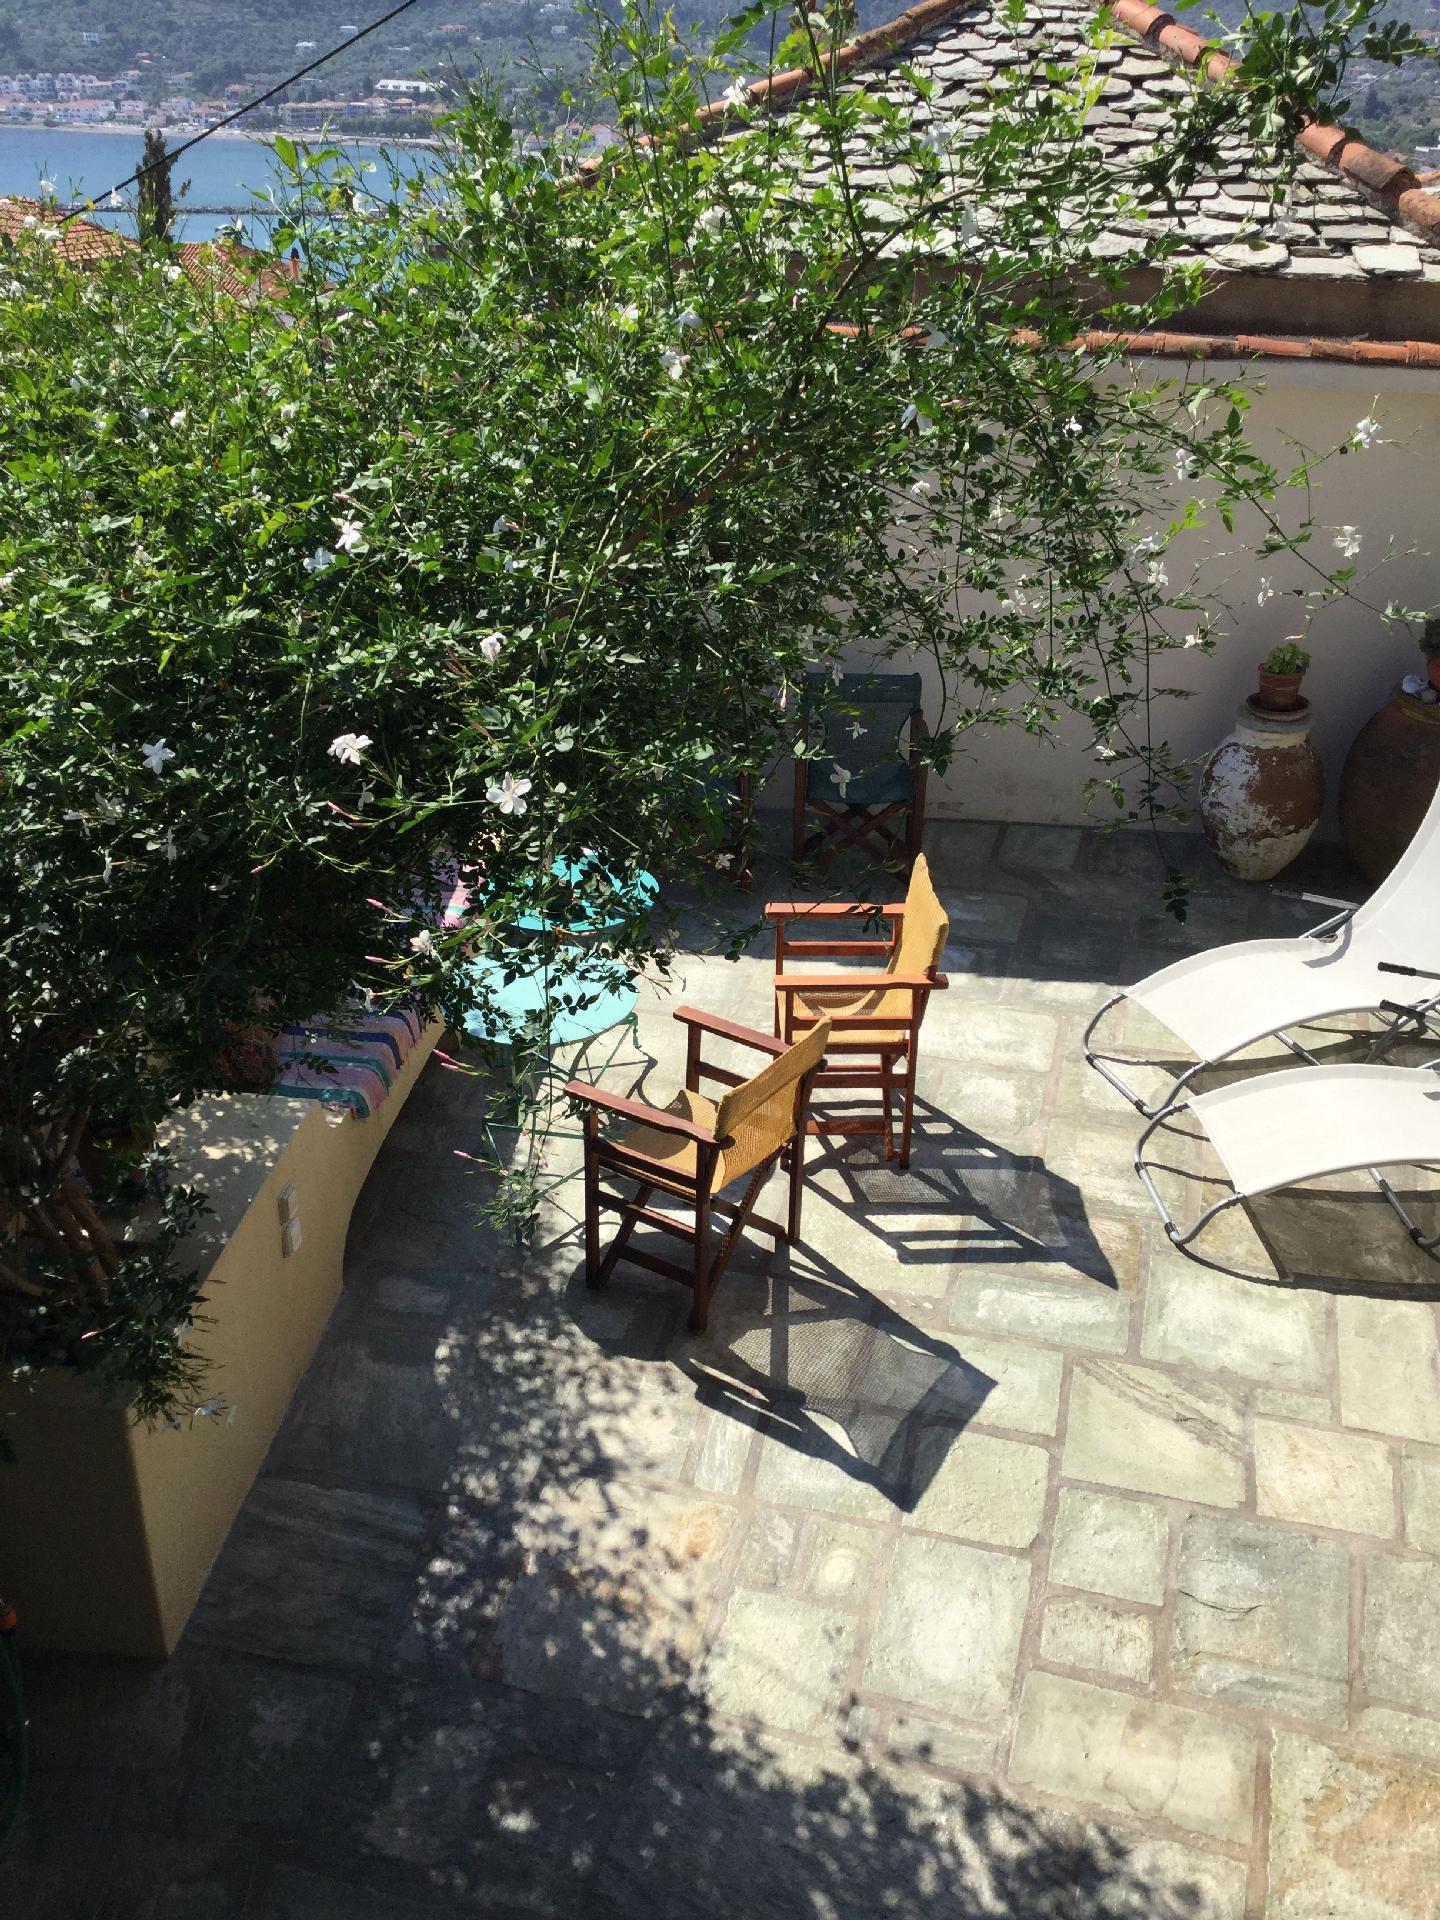 Ferienhaus in Skopelos mit Großer Terrasse u Ferienhaus in Griechenland